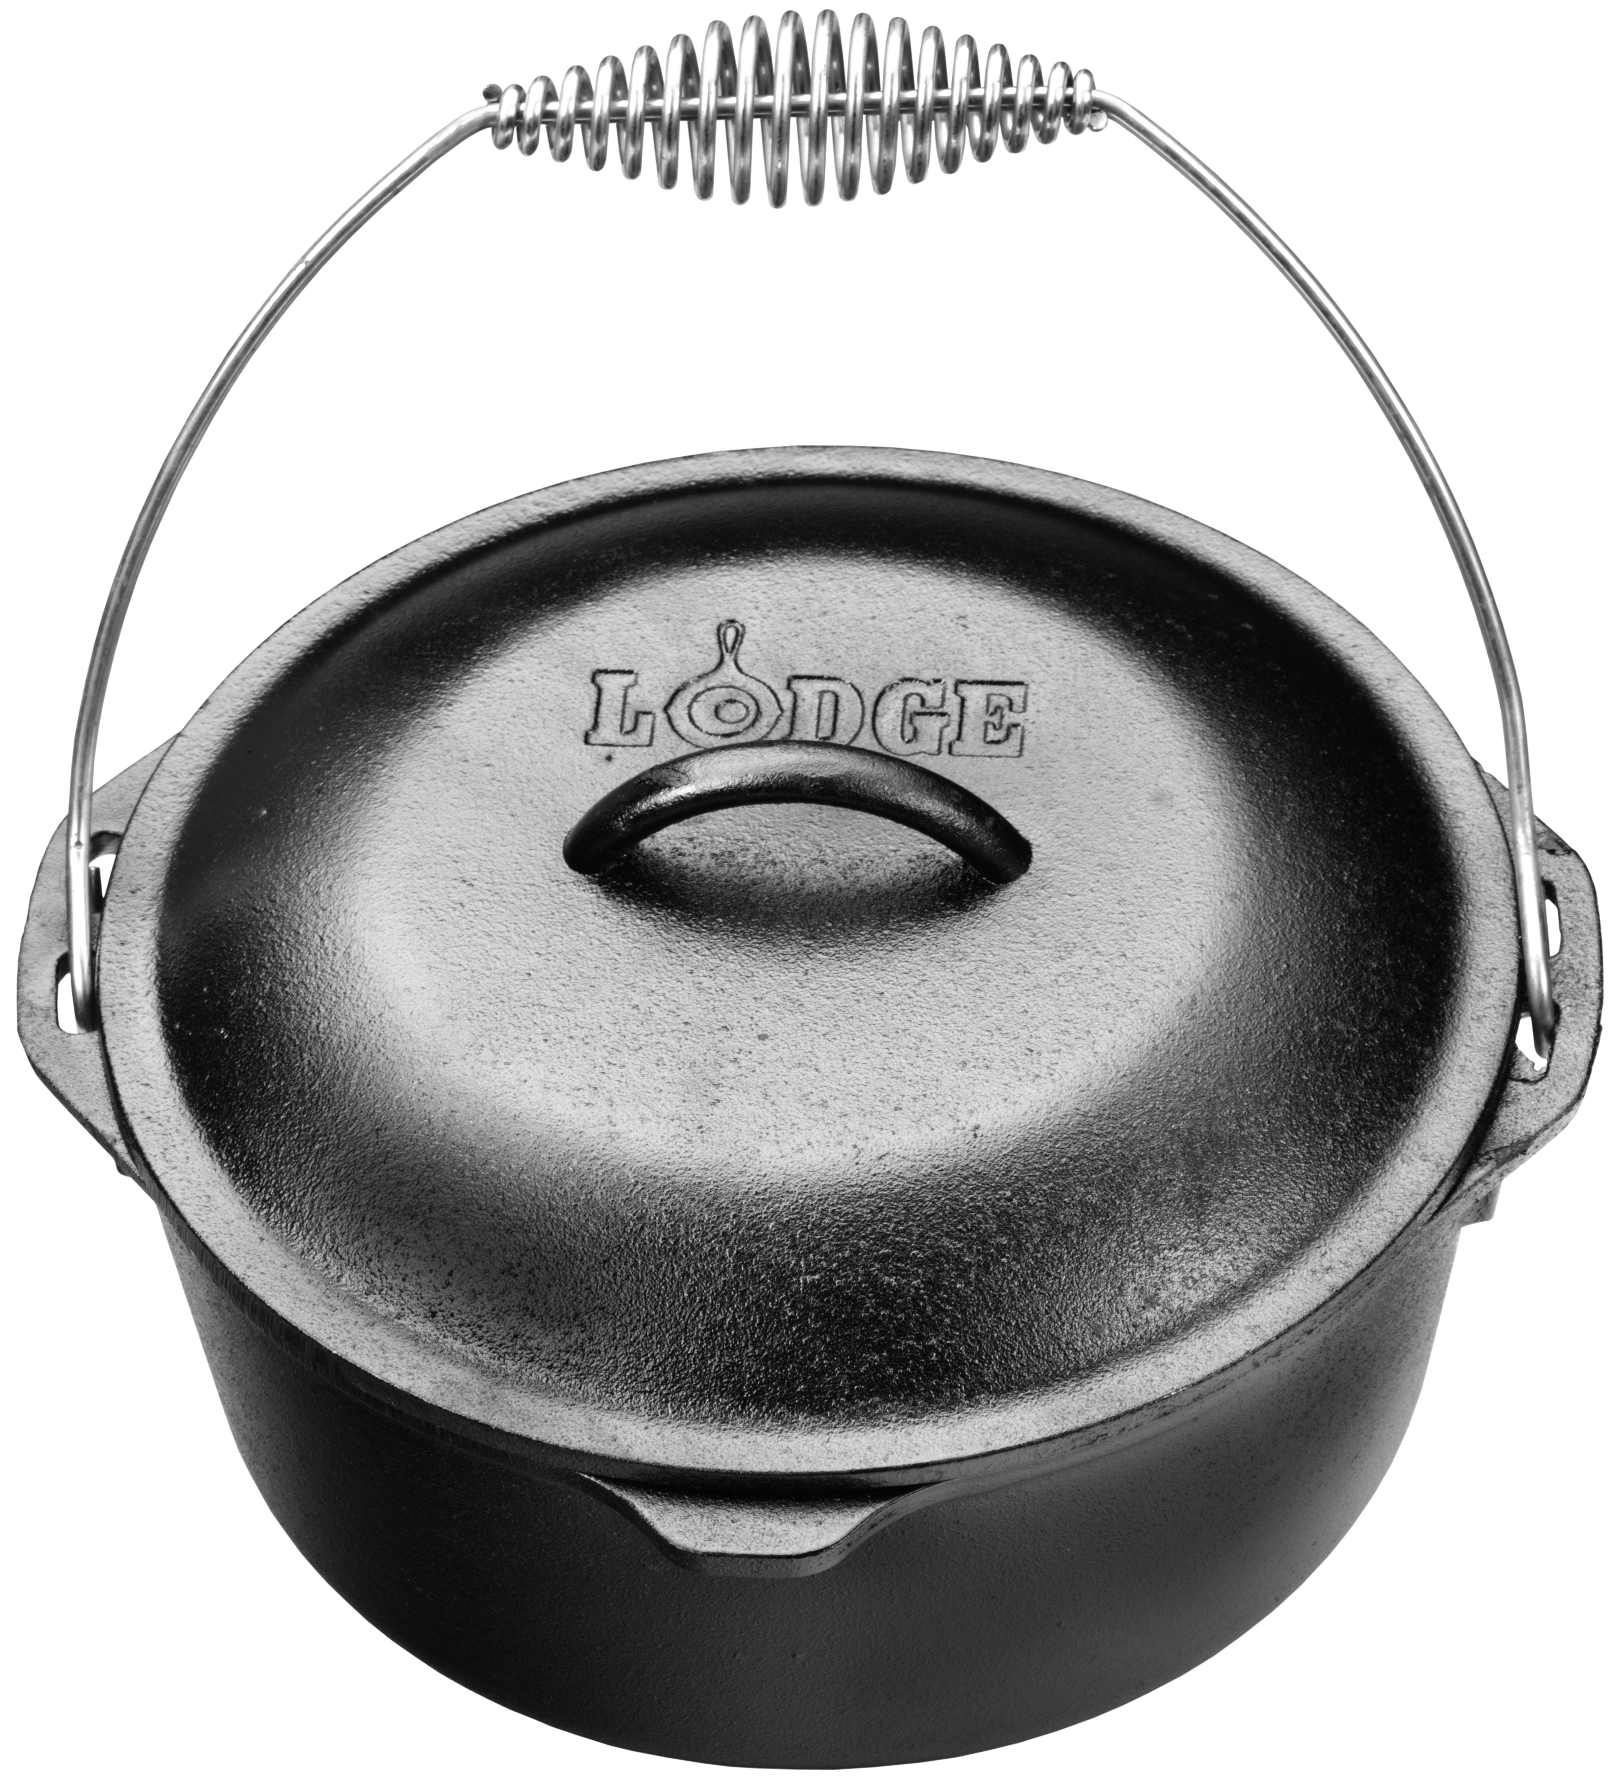 Lodge Pro Logic Cast Iron 8 qt Camp Dutch Oven - Kitchen & Company